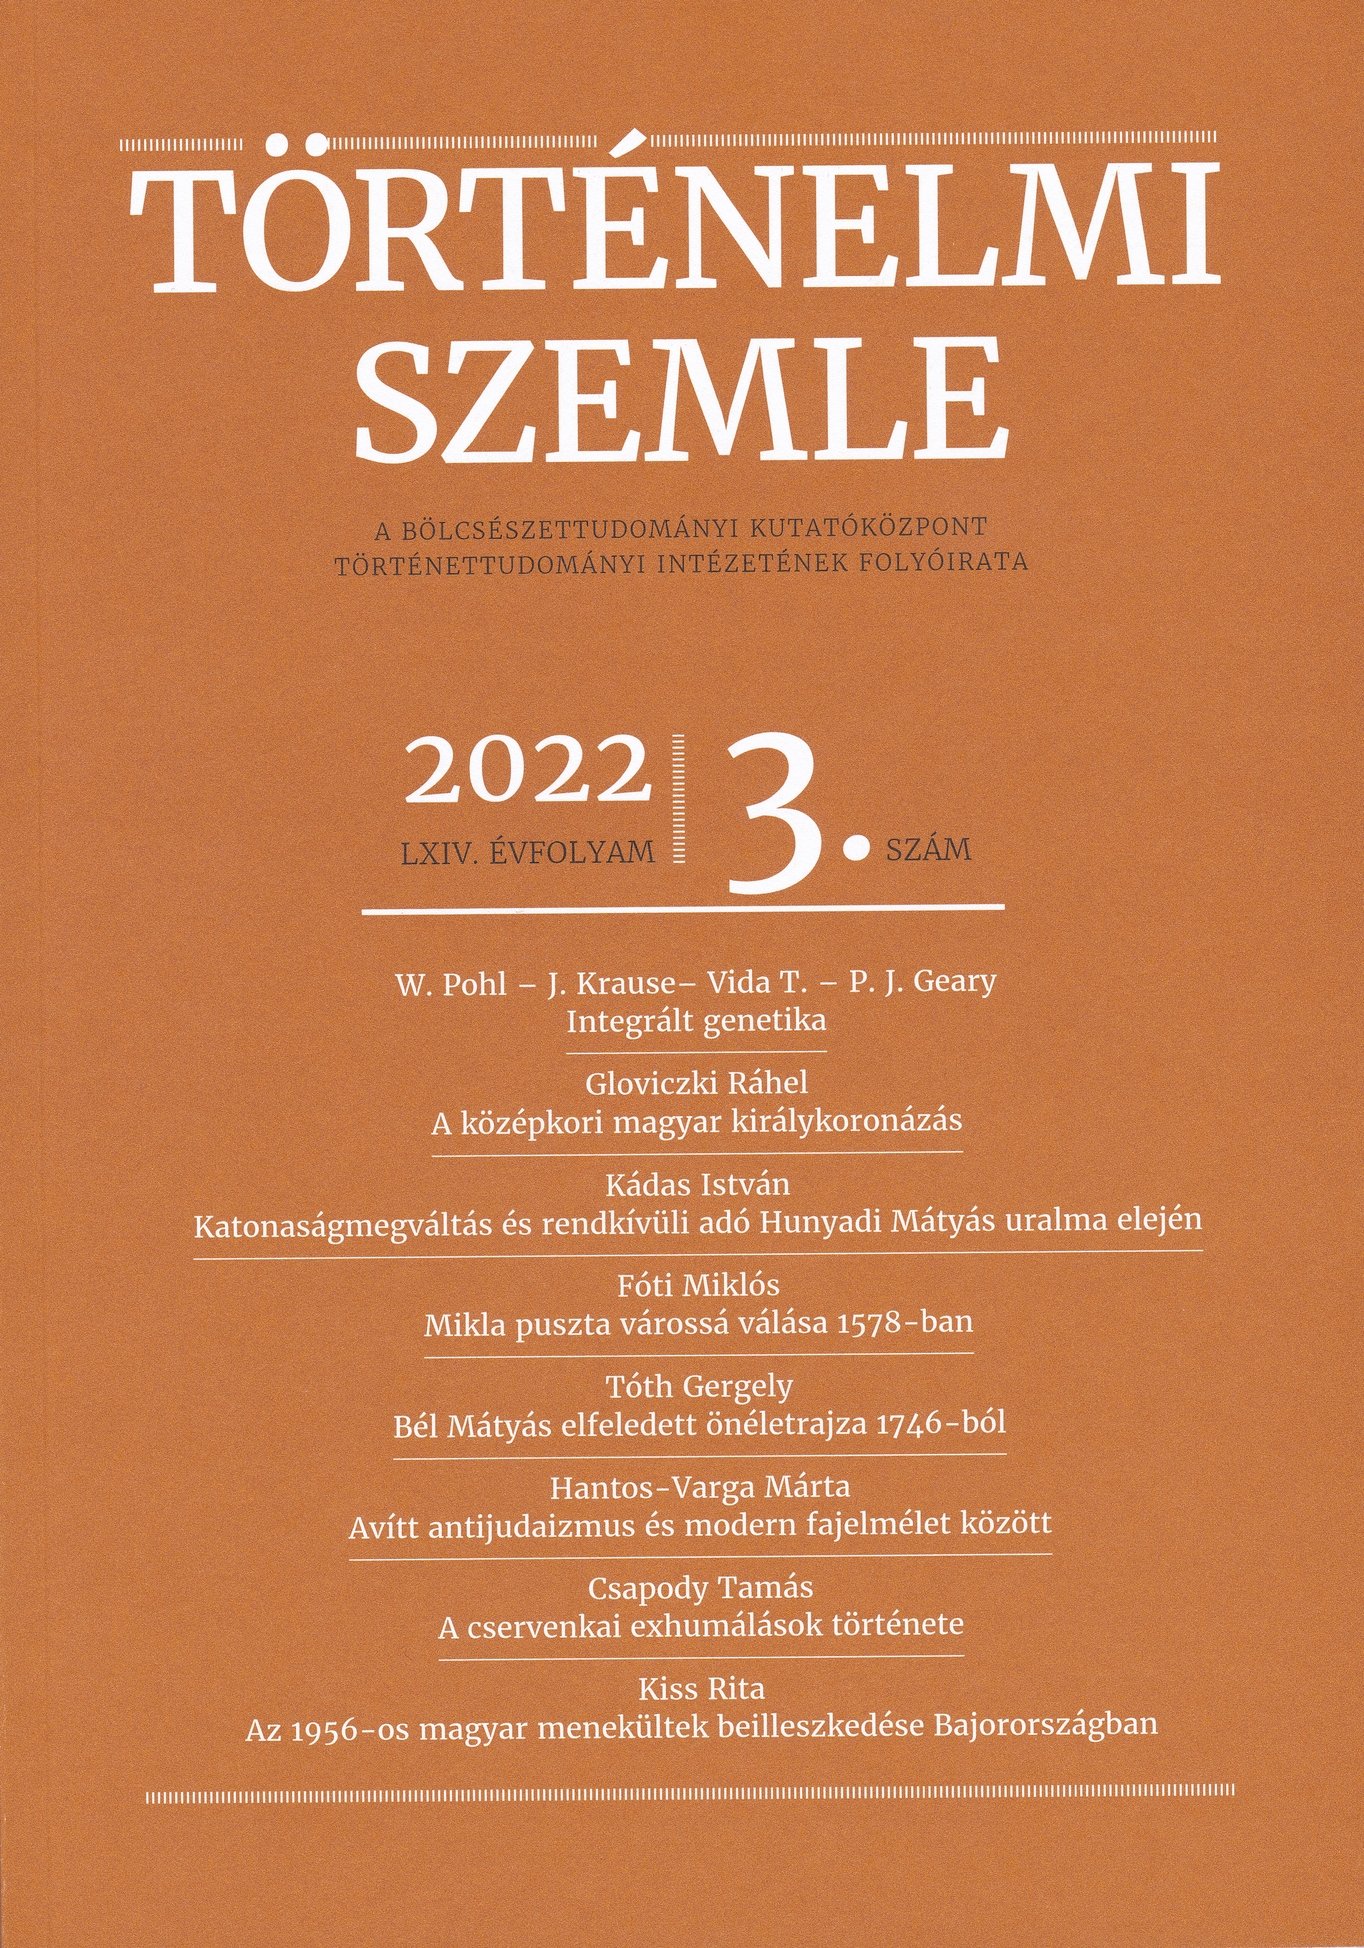 Történelmi Szemle 2022/64. évf. 3. sz. (Rippl-Rónai Múzeum CC BY-NC-ND)